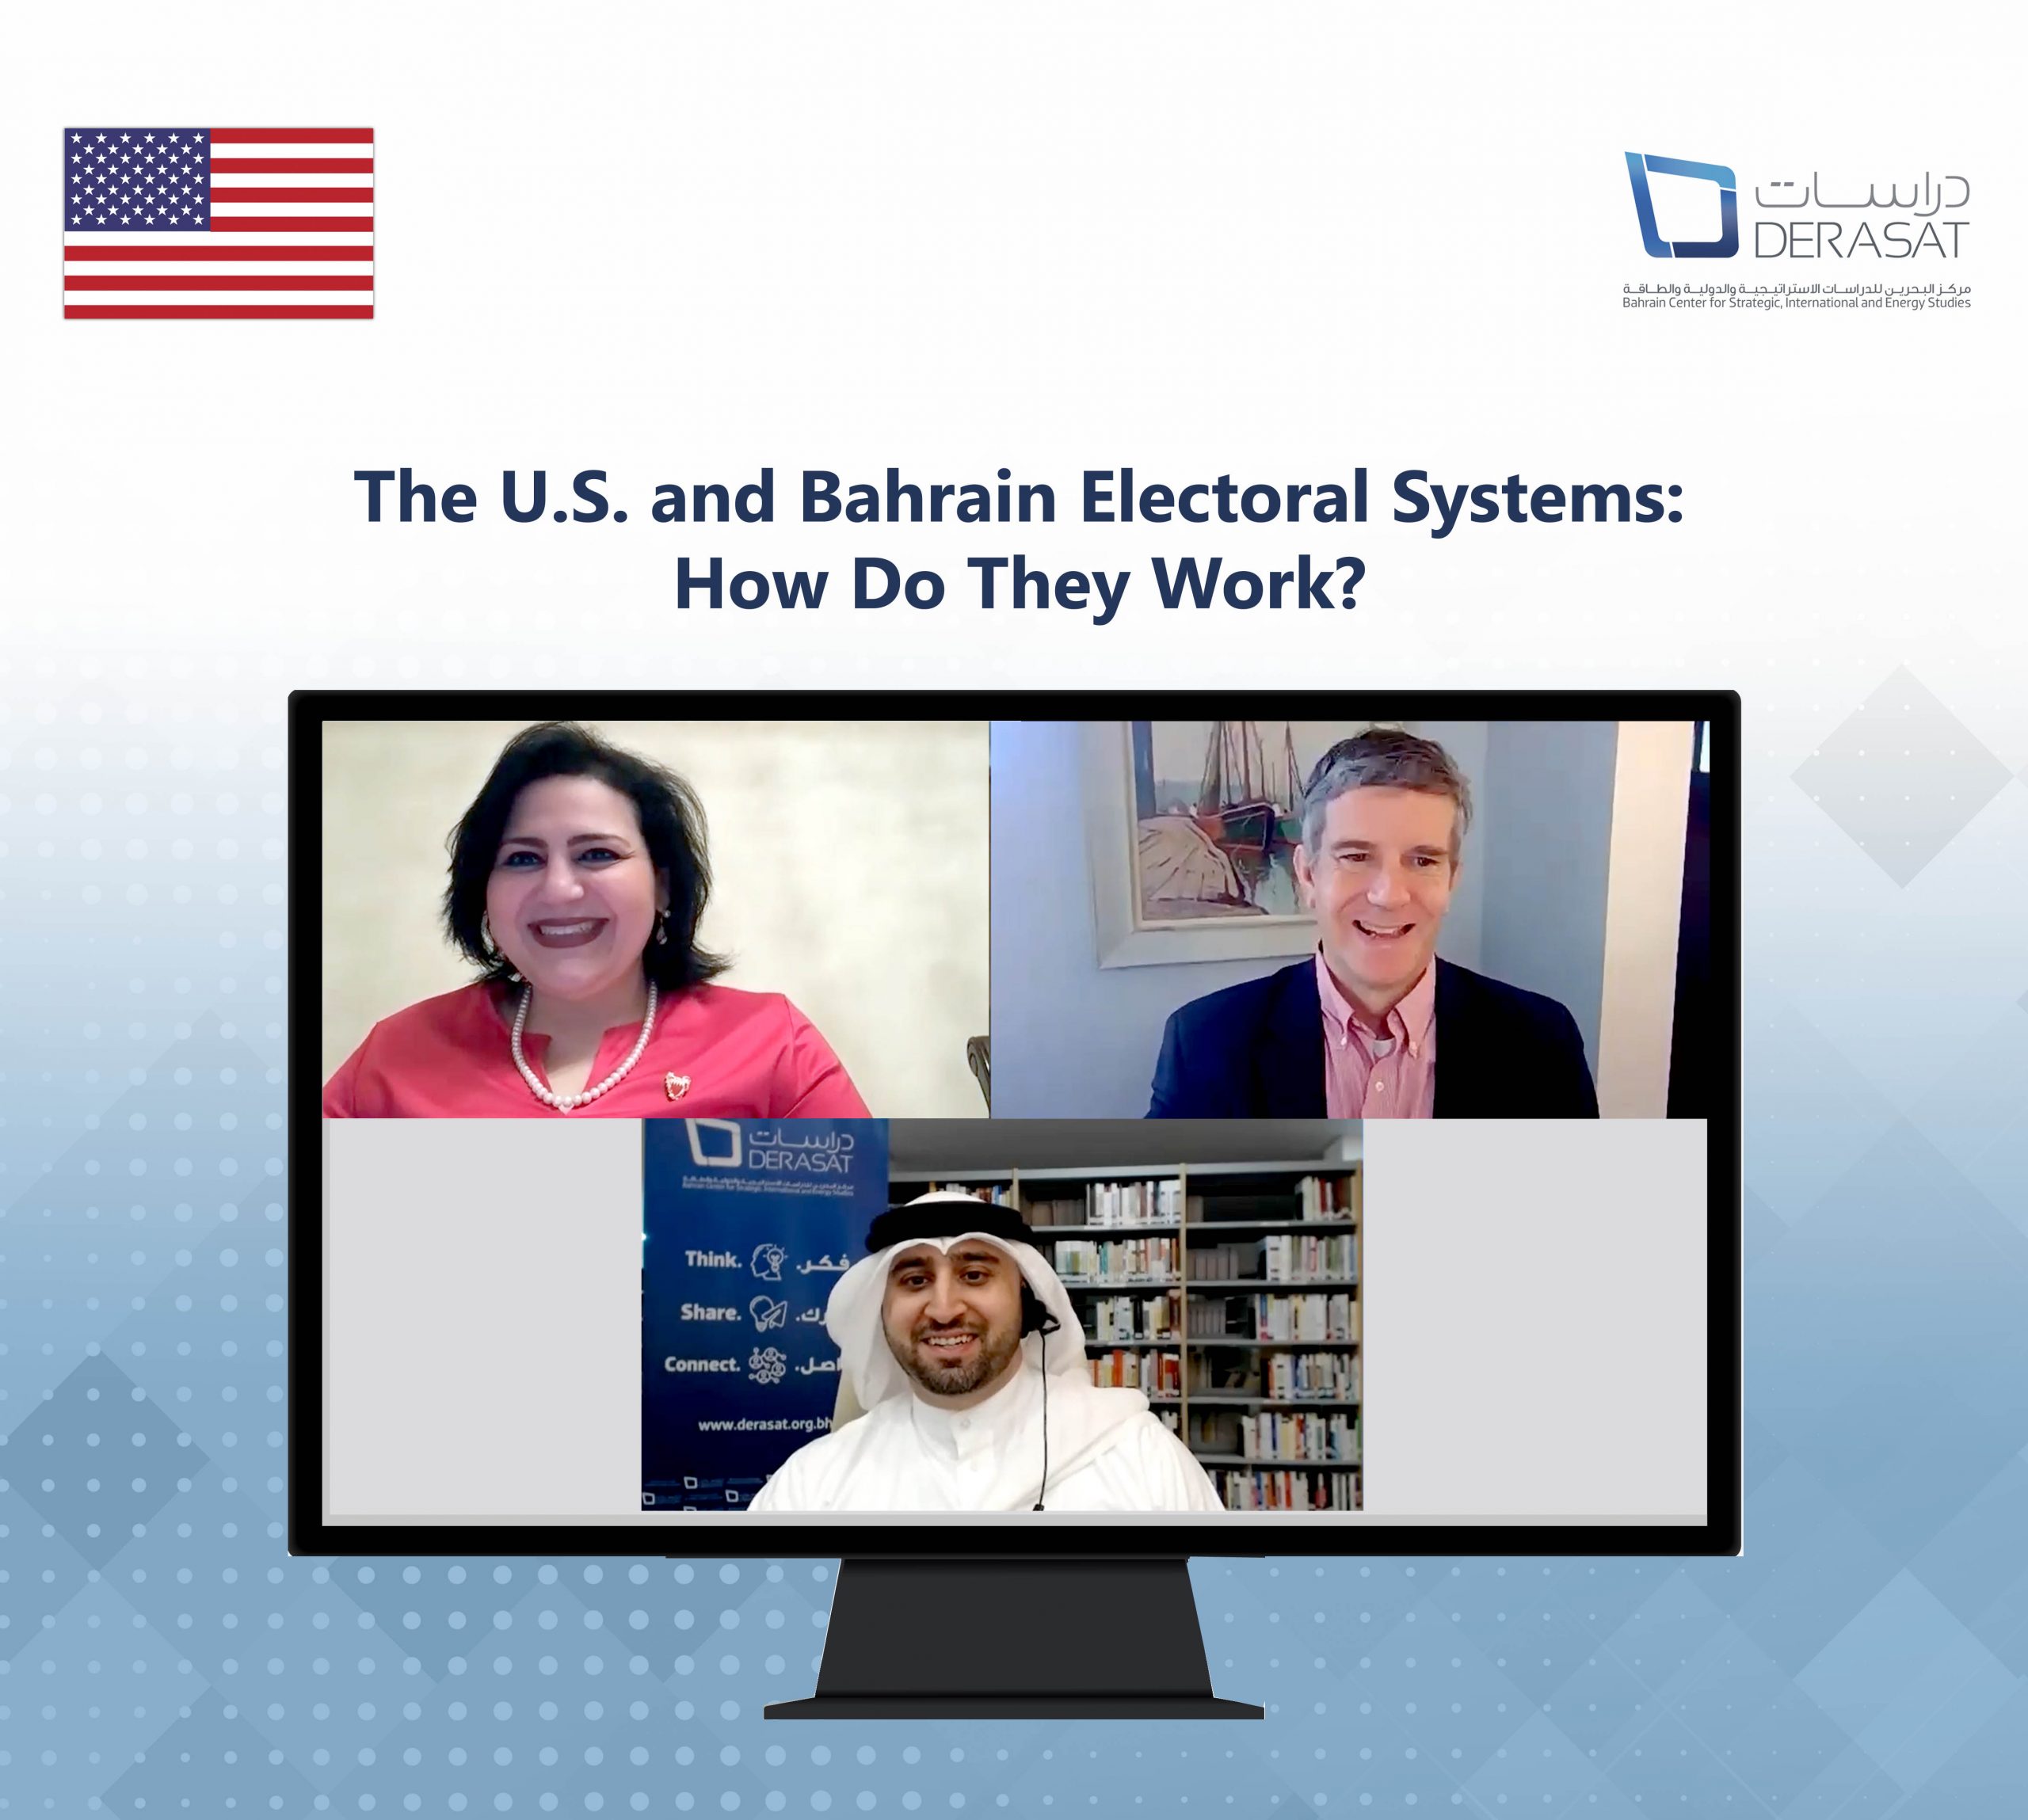 حوار فكري مرئي: “النظامان الانتخابيان للولايات المتحدة ومملكة البحرين: كيف يعملان؟”